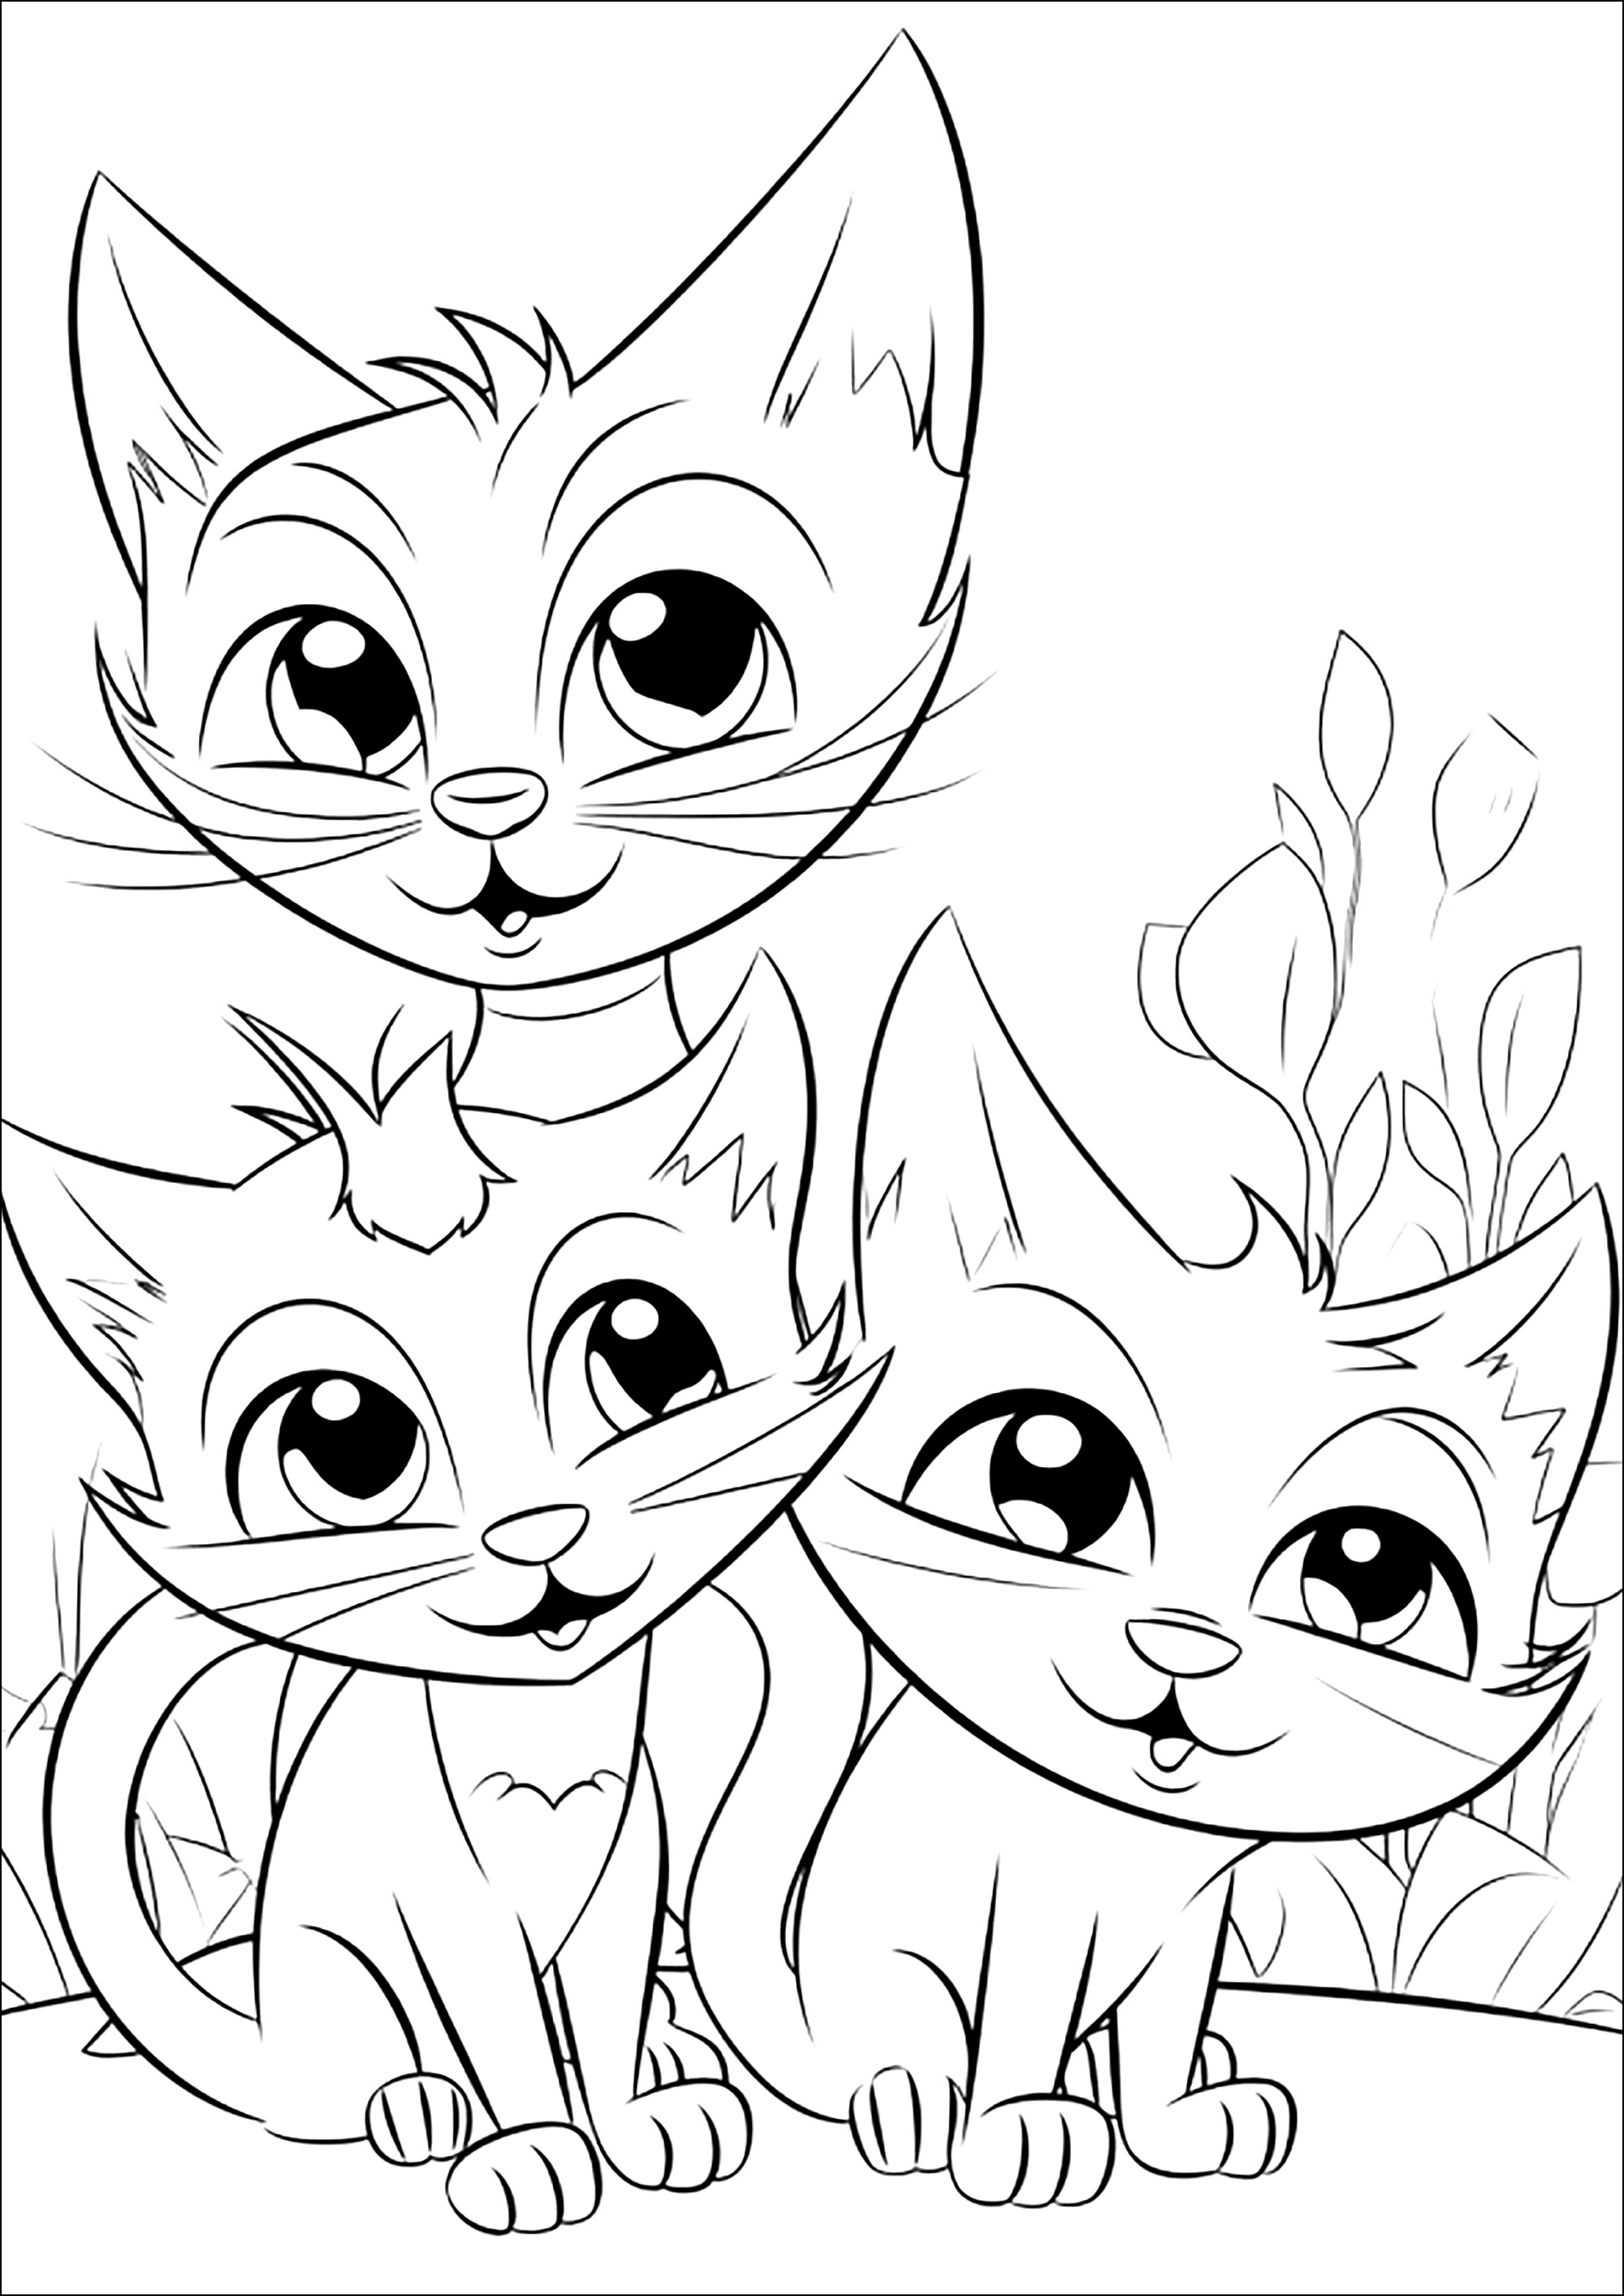 Três Gatos brincalhões. Coloração muito simples, com alguns pormenores de plantas no fundo